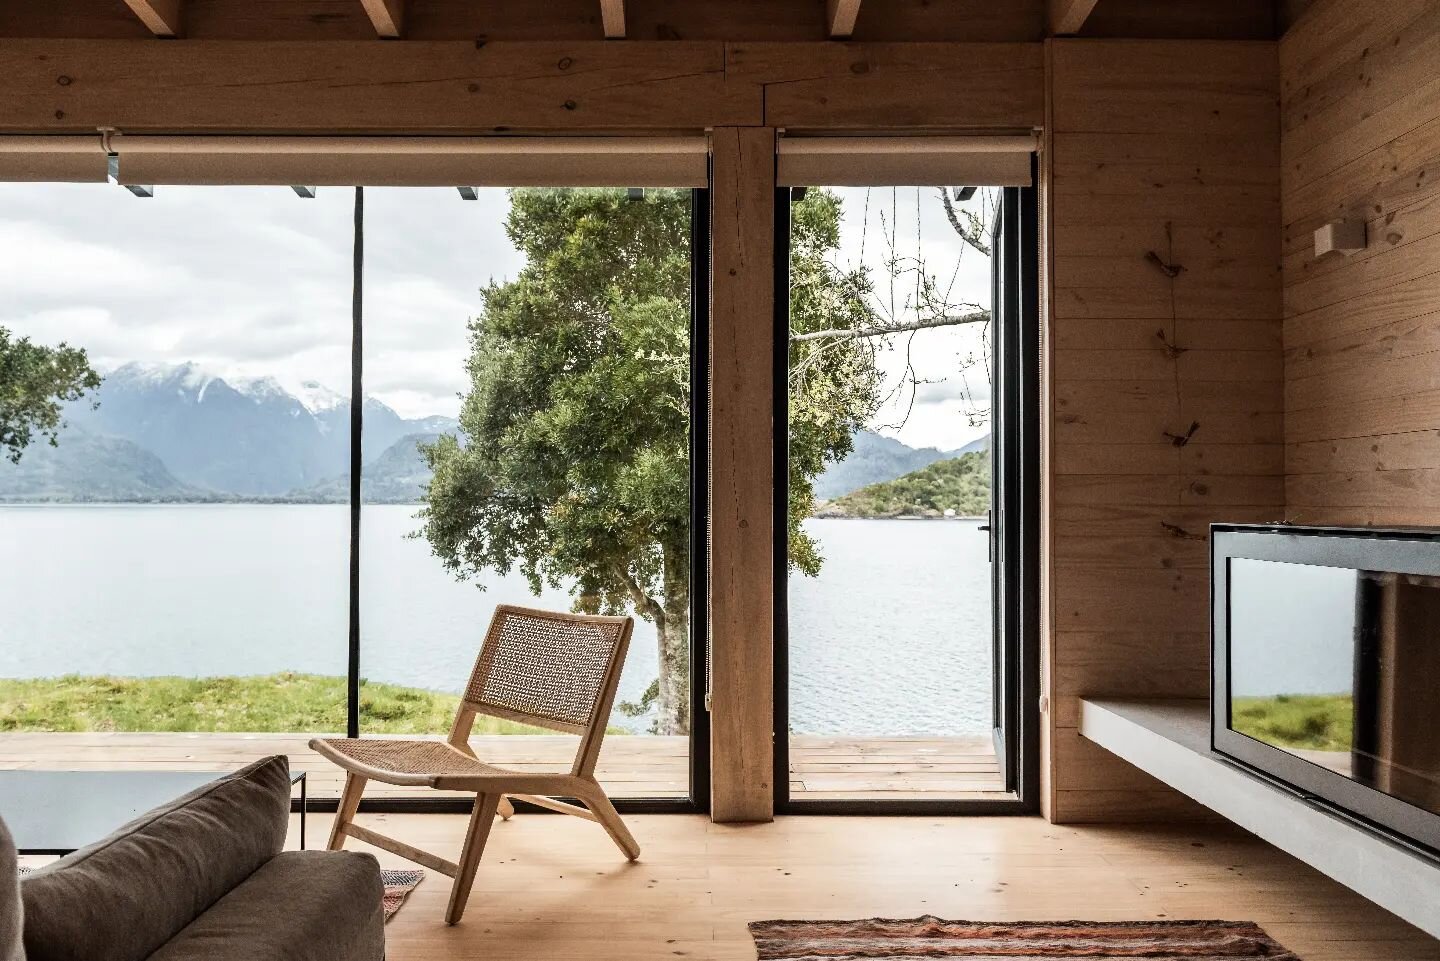 Casa en el lago
Relaci&oacute;n con el exterior 

 
Construcci&oacute;n 2021
+ pmmk
Lago Ranco
Chile